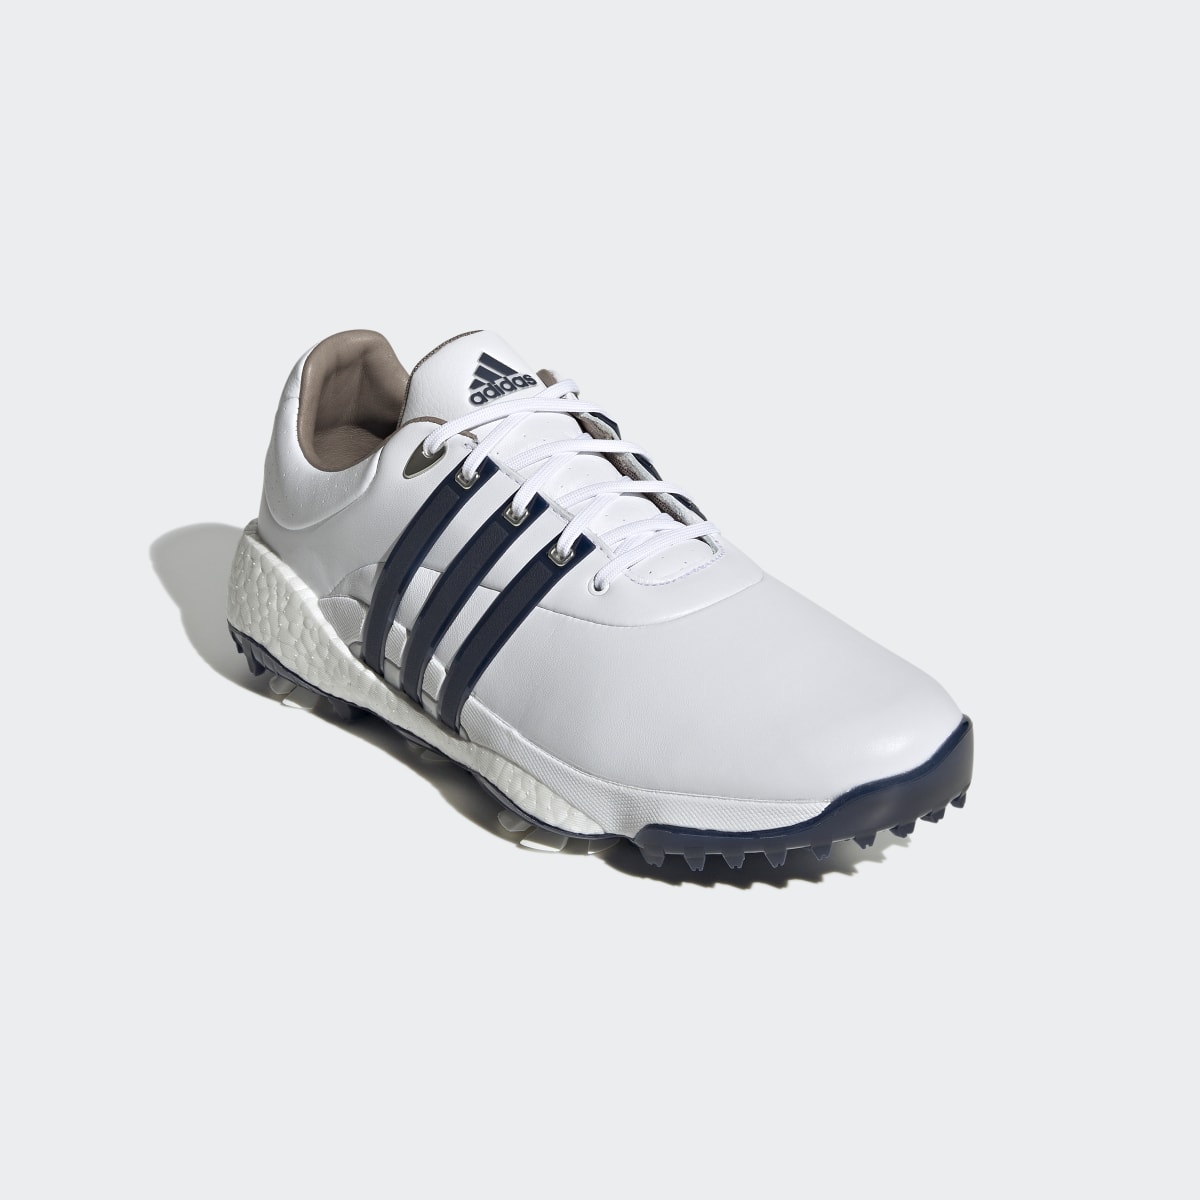 Adidas Tour360 22 Golf Shoes. 9